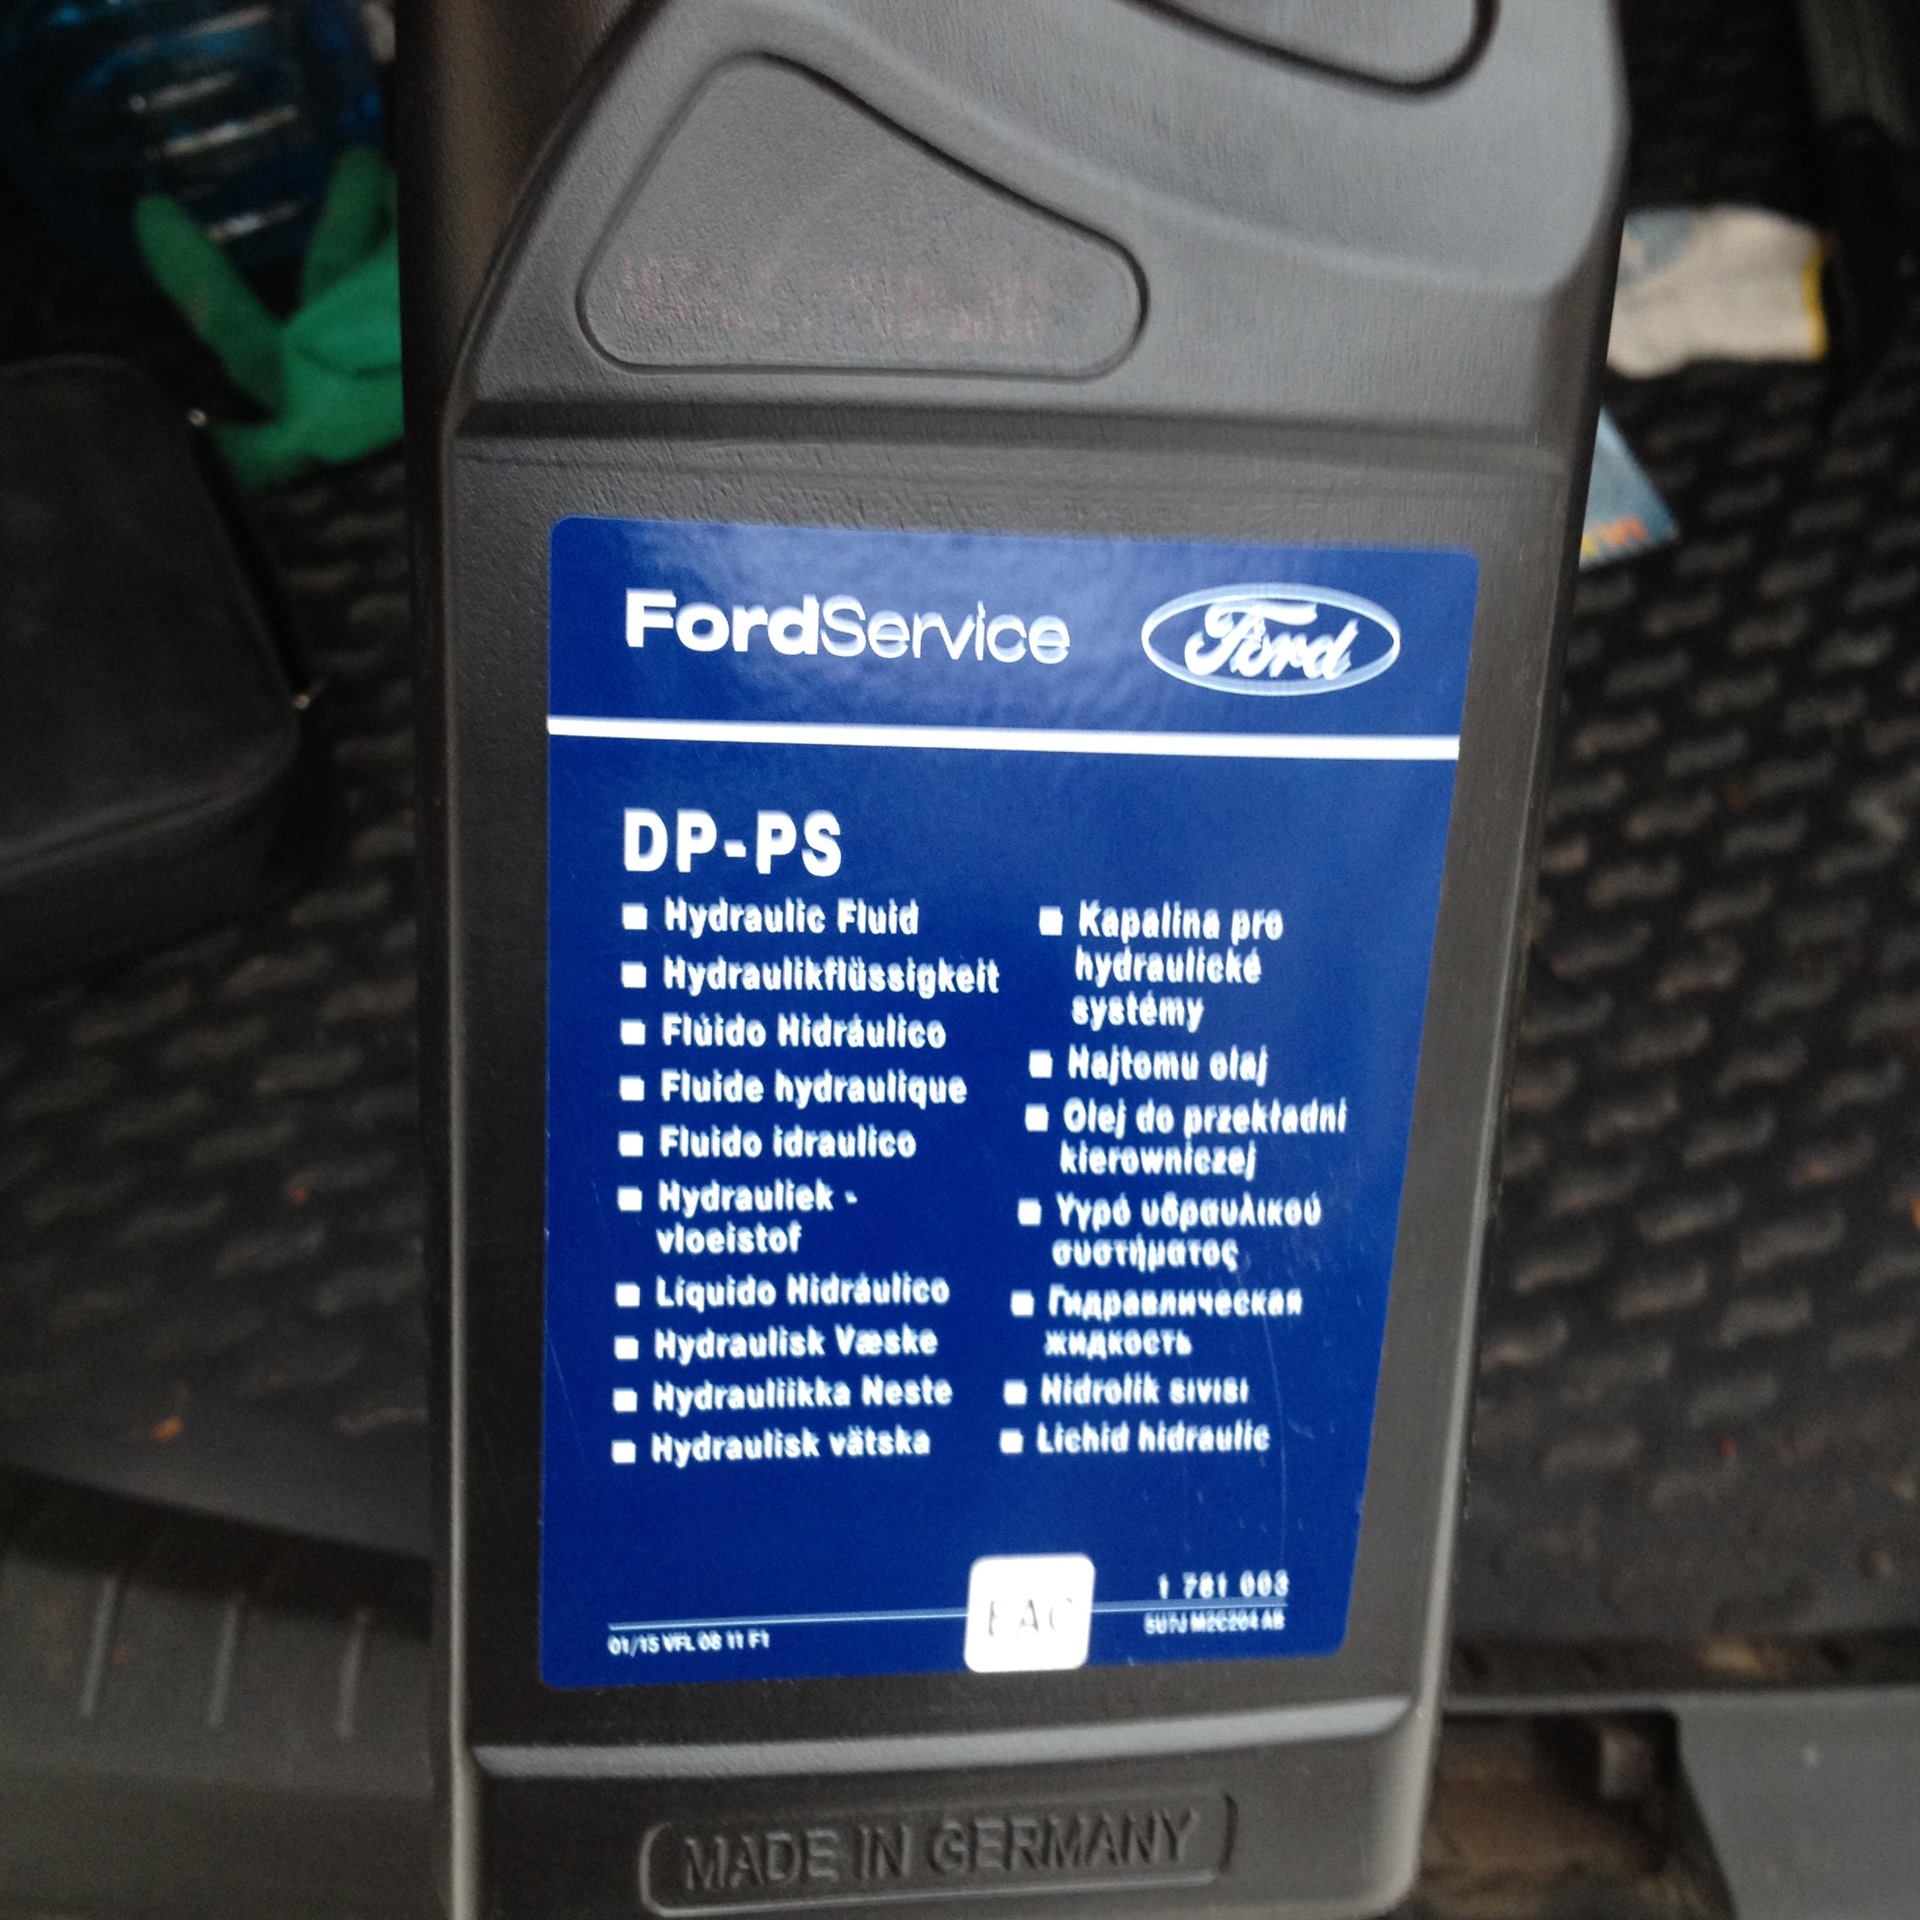 Какое масло заливается в форд фокус. Гидравлическая жидкость Форд фокус 2. 2 Масло в ГУР Ford Focus 2. Жидкость гидроусилителя Форд фокус 2. Ford Focus 2 масло ГУР.